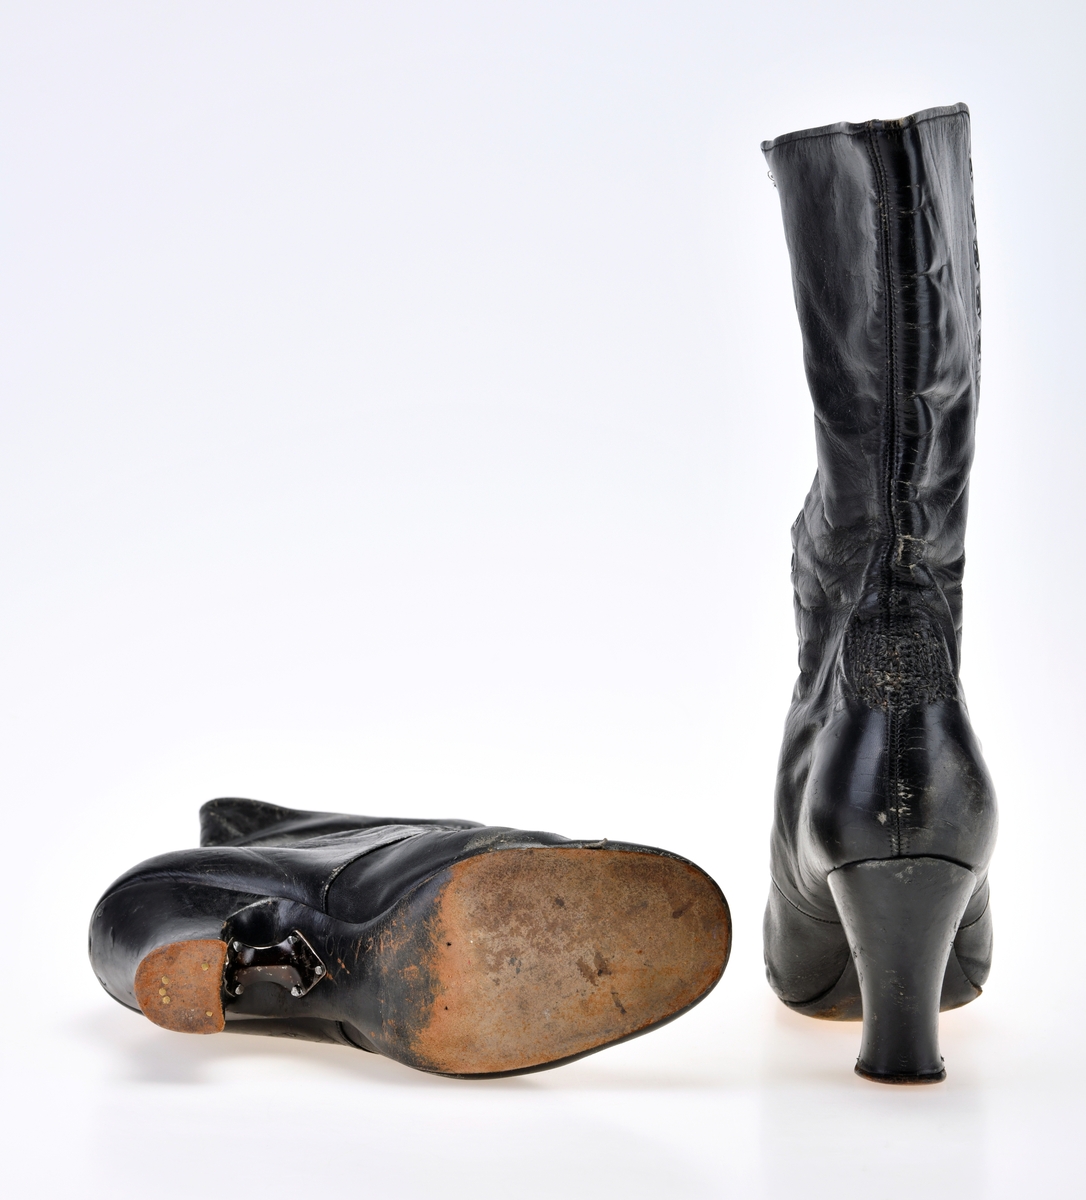 Et par damesko/støvletter av svart skinn. Skoene er avrundet foran. I front er det 19 par hull/maljer for snøring. Skoene mangler skolisser. Under snøringen er det en enkel skinntunge foret med hvitt lerretsstoff. Skoene er foret med hvitt lerretsstoff, øverste 7cm er blått lerretsstoff. Innersålen er av brunt skinn. Yttersålen og hælen er av svart lær som er nedslitt. Mellom hæl og såle er det satt på et metallbeslag (stiftet på). Støvlene har høye hæler.